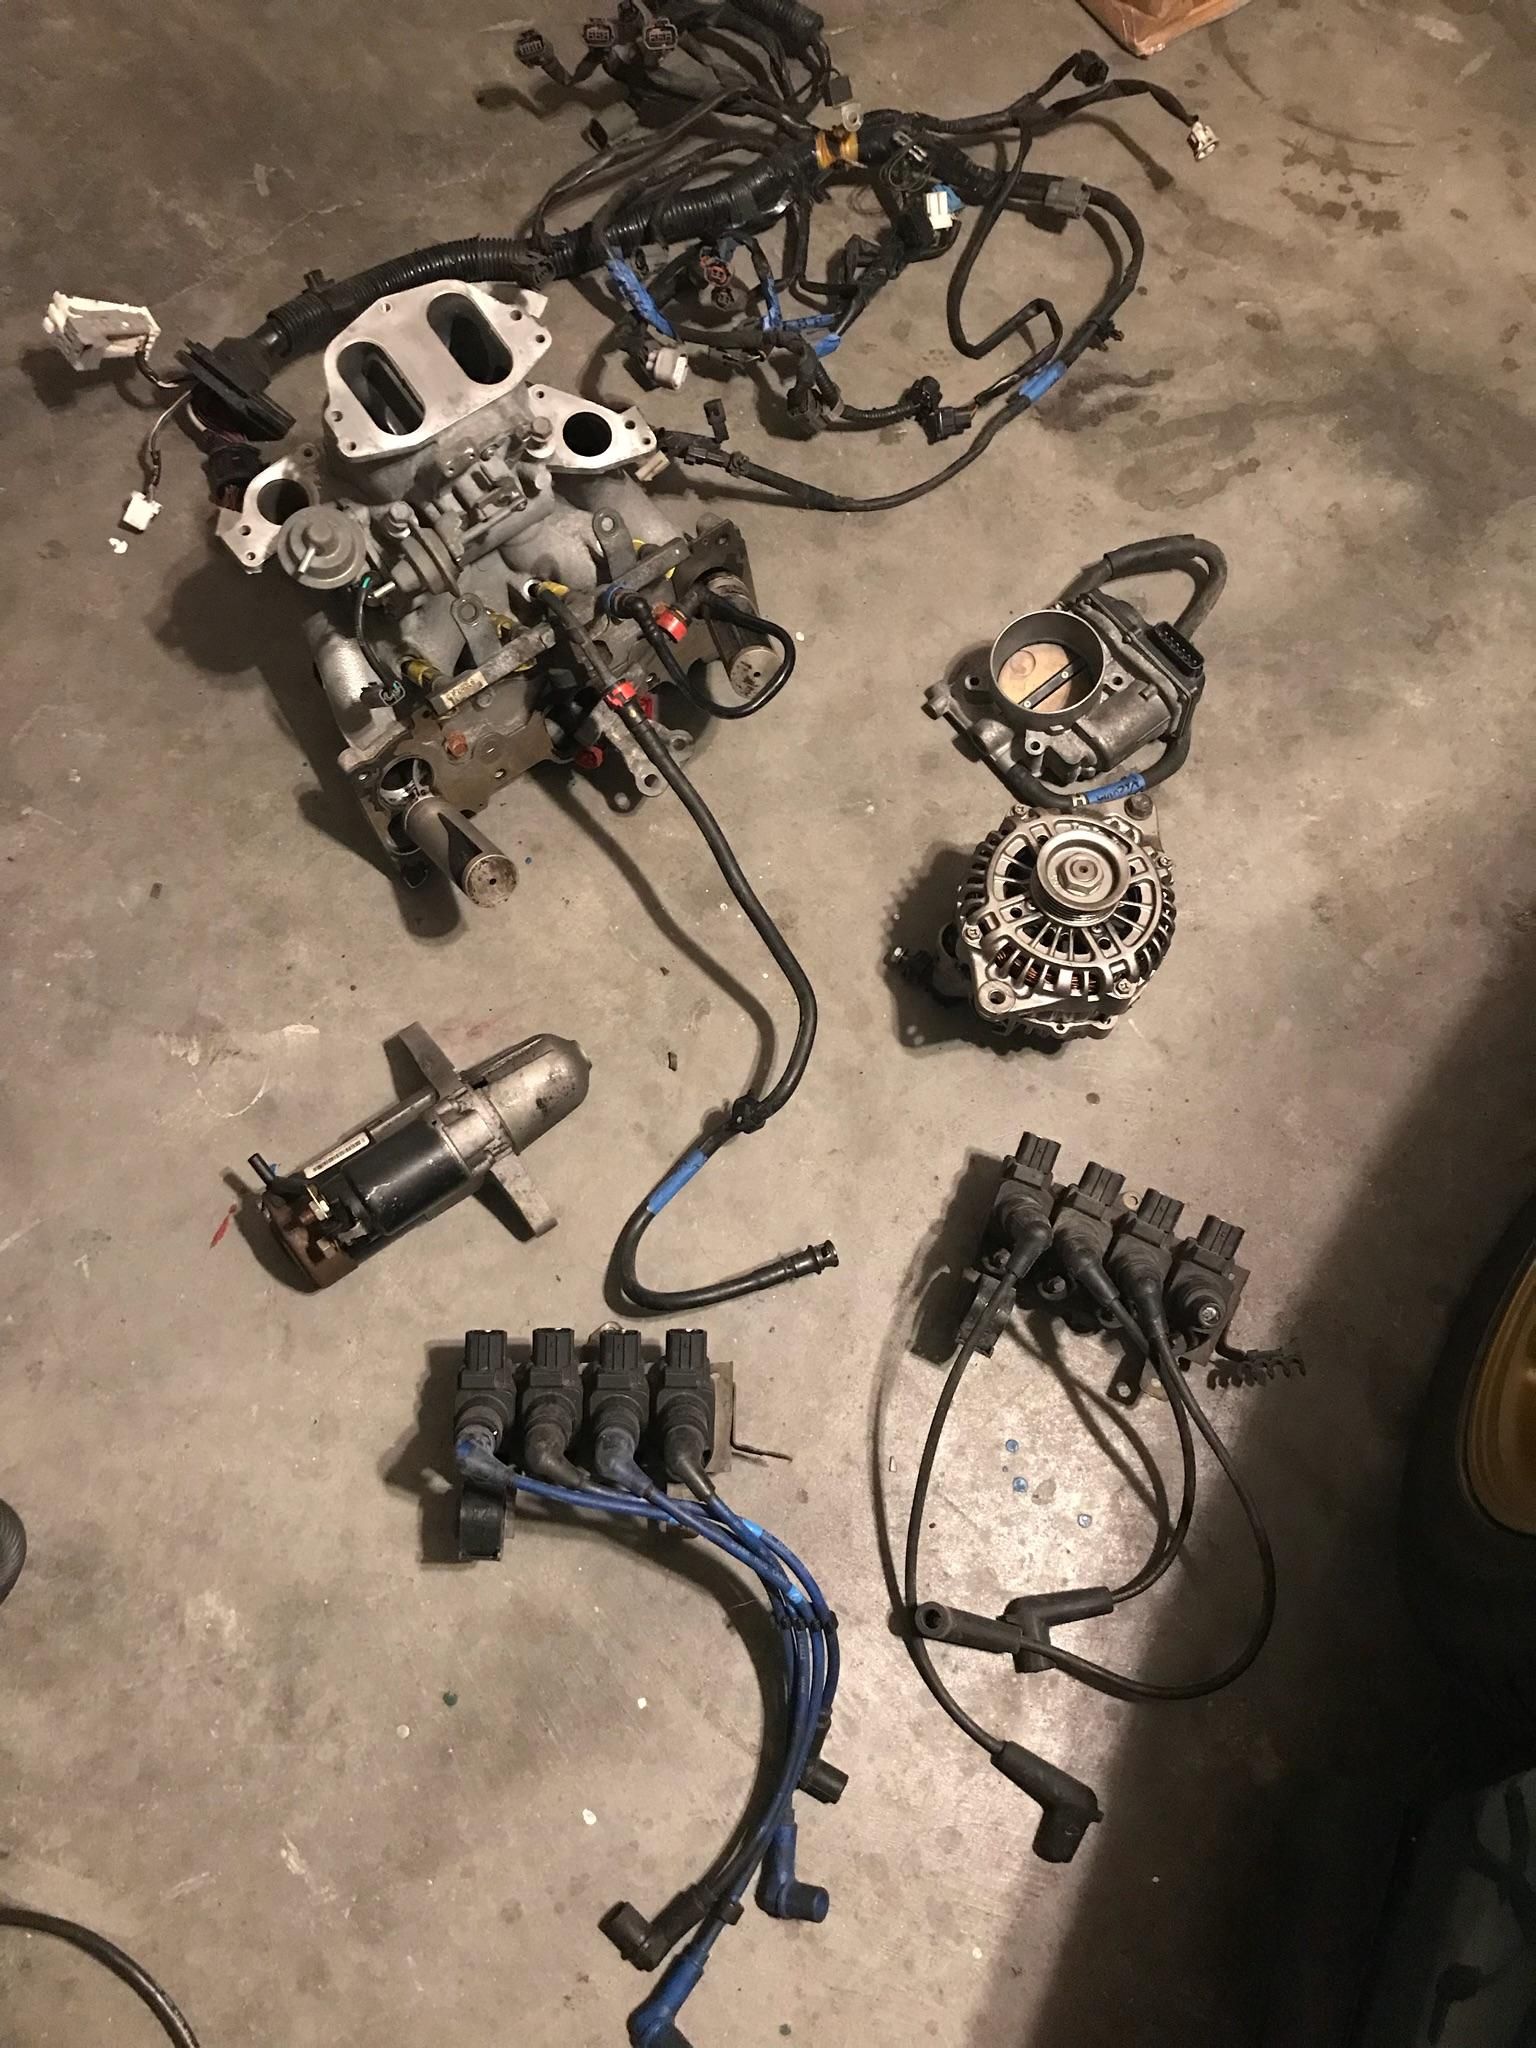 Rx8 parts